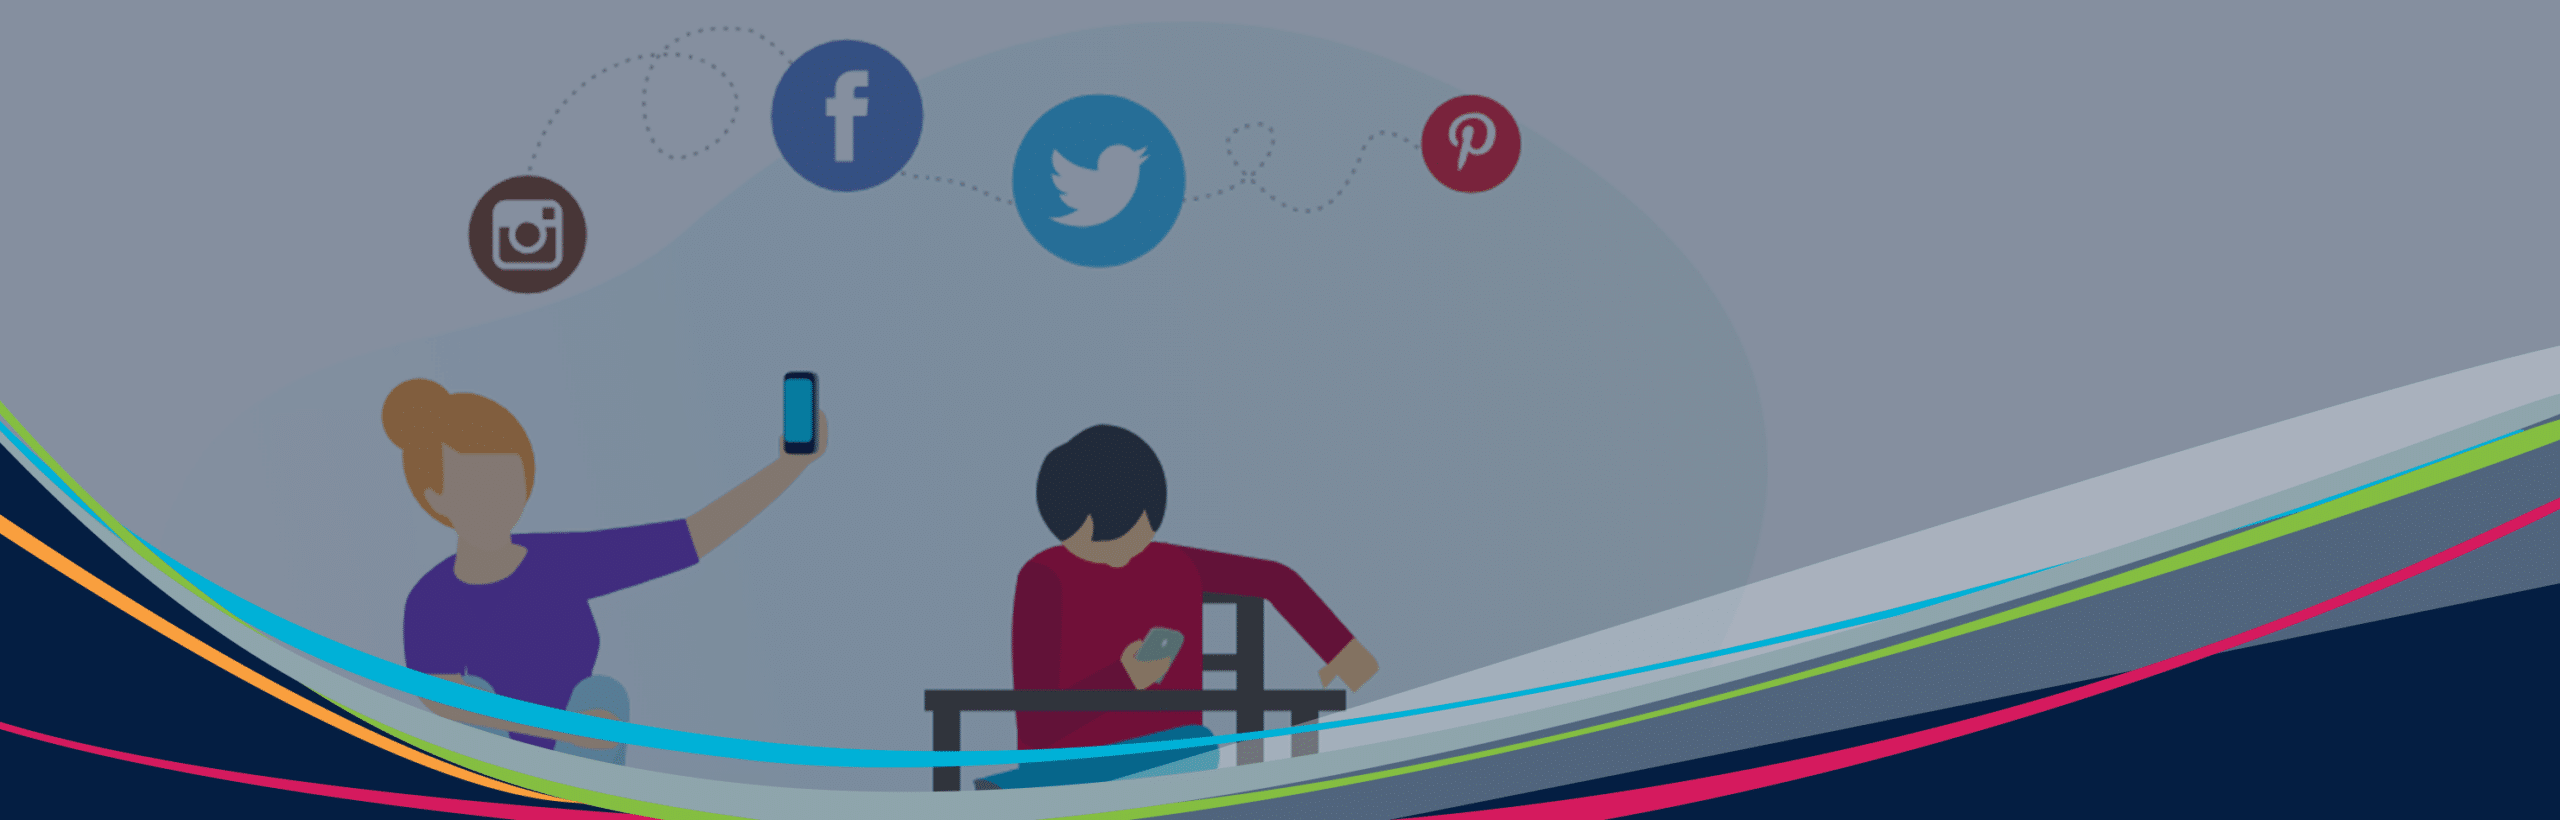 Hjälte illustrerad grafik av elever med enheter och sociala medier ikoner flytande i bakgrunden